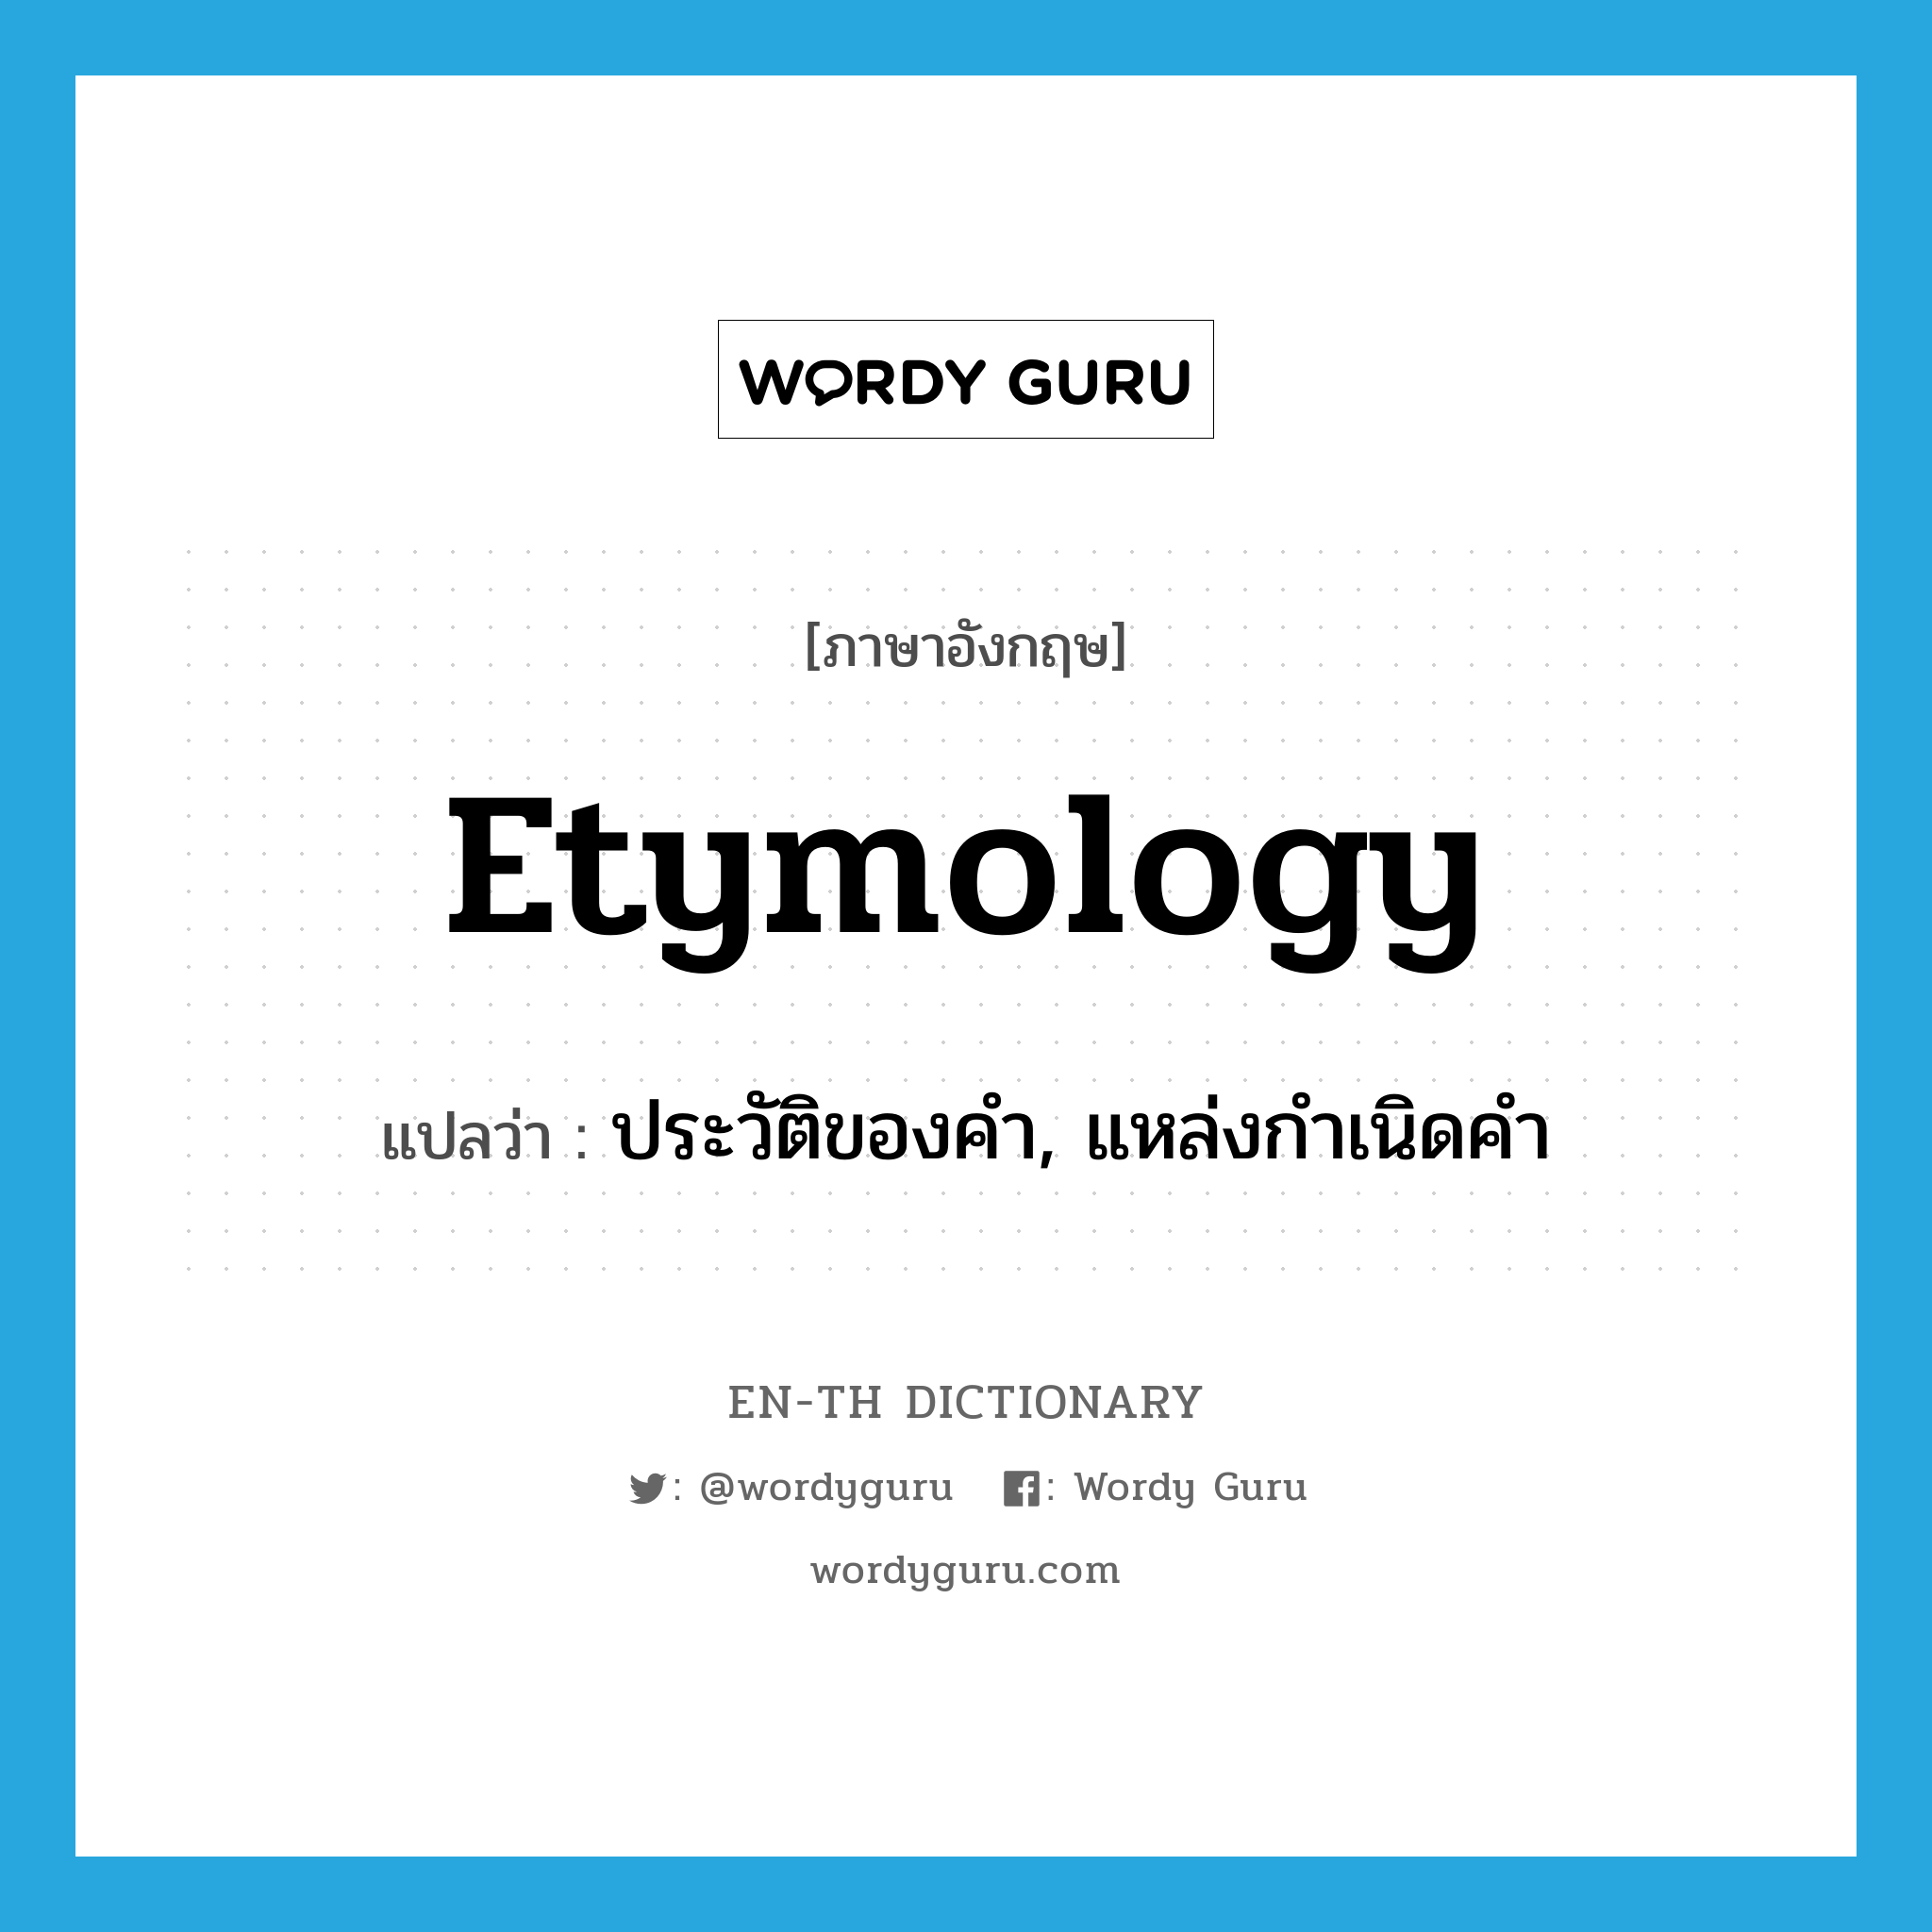 ประวัติของคำ, แหล่งกำเนิดคำ ภาษาอังกฤษ?, คำศัพท์ภาษาอังกฤษ ประวัติของคำ, แหล่งกำเนิดคำ แปลว่า etymology ประเภท N หมวด N